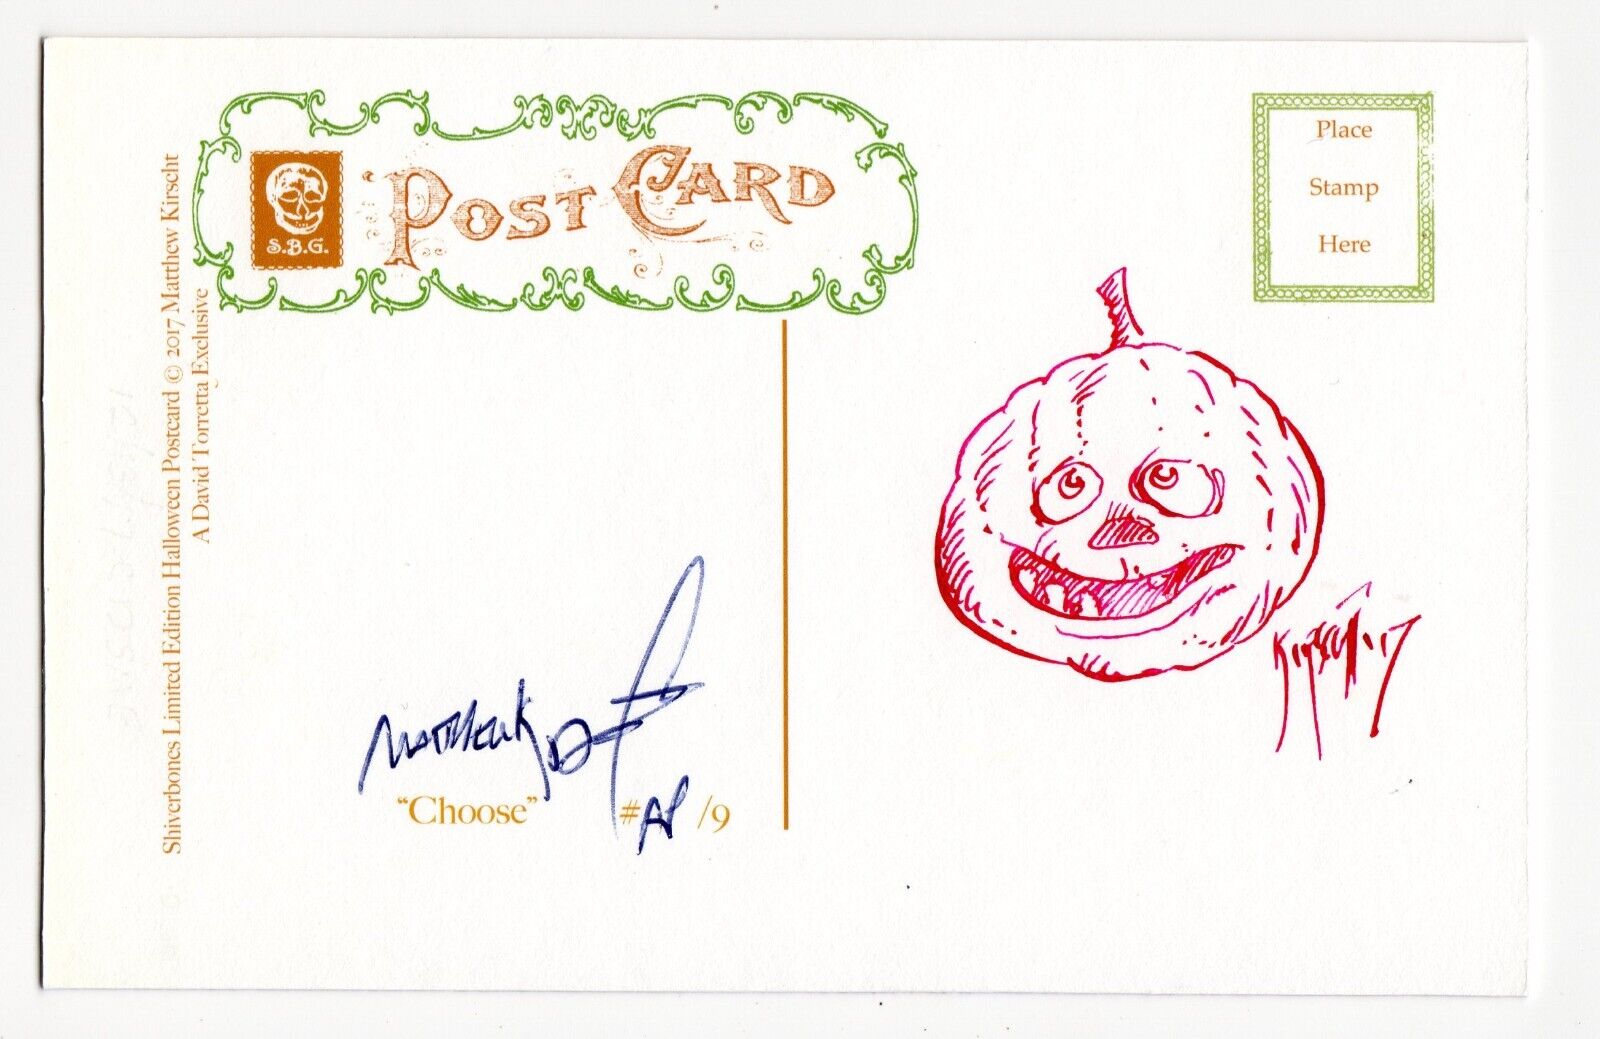 Halloween Postcard Matthew Kirscht 2017 Choose AP/9 Flat Sketch